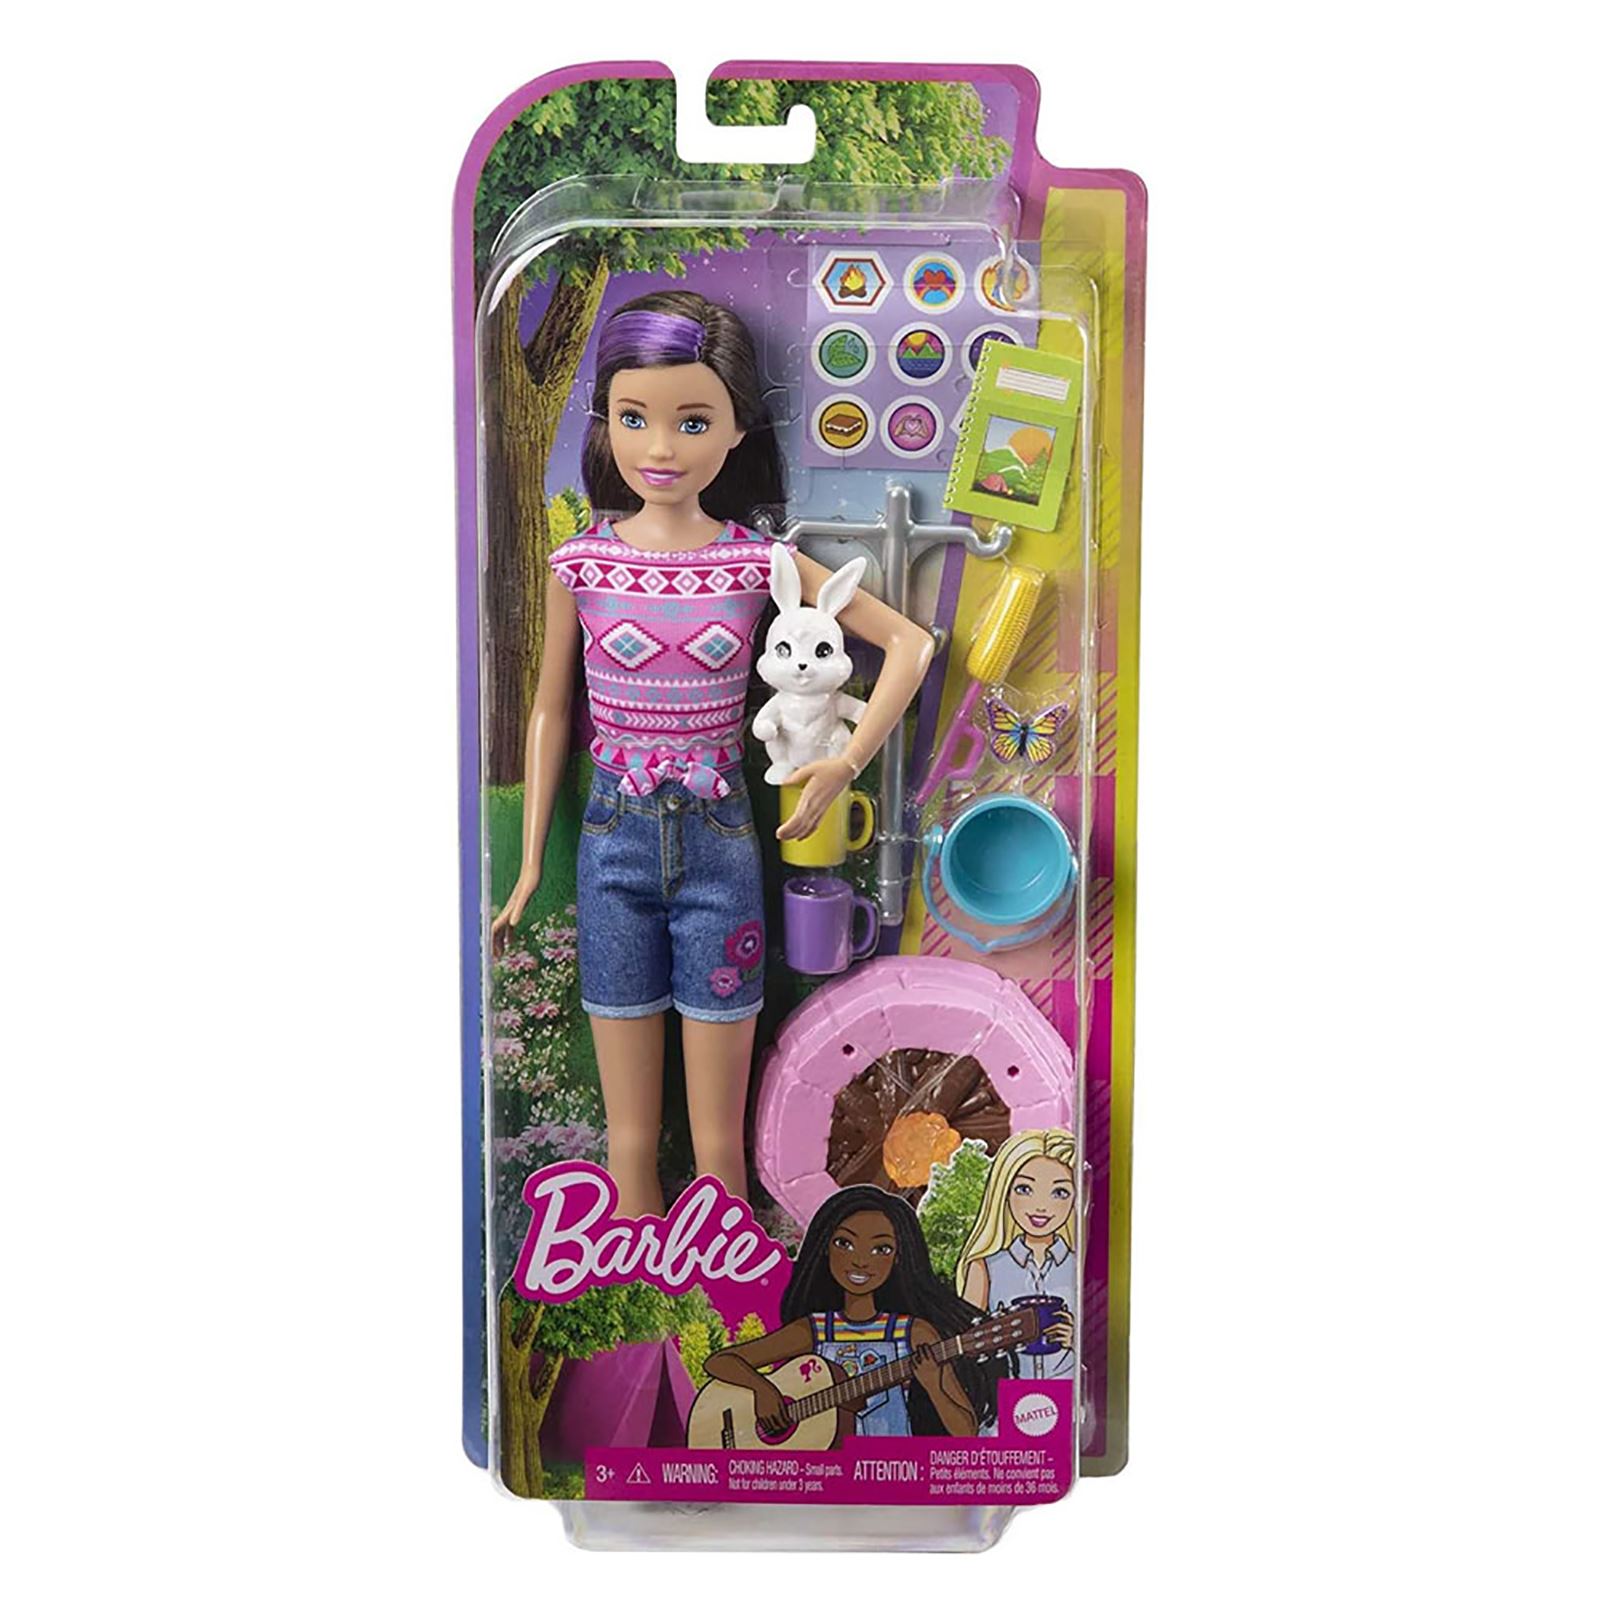 Barbie'nin Kız Kardeşleri Kampa Gidiyor Oyun Seti Pembe